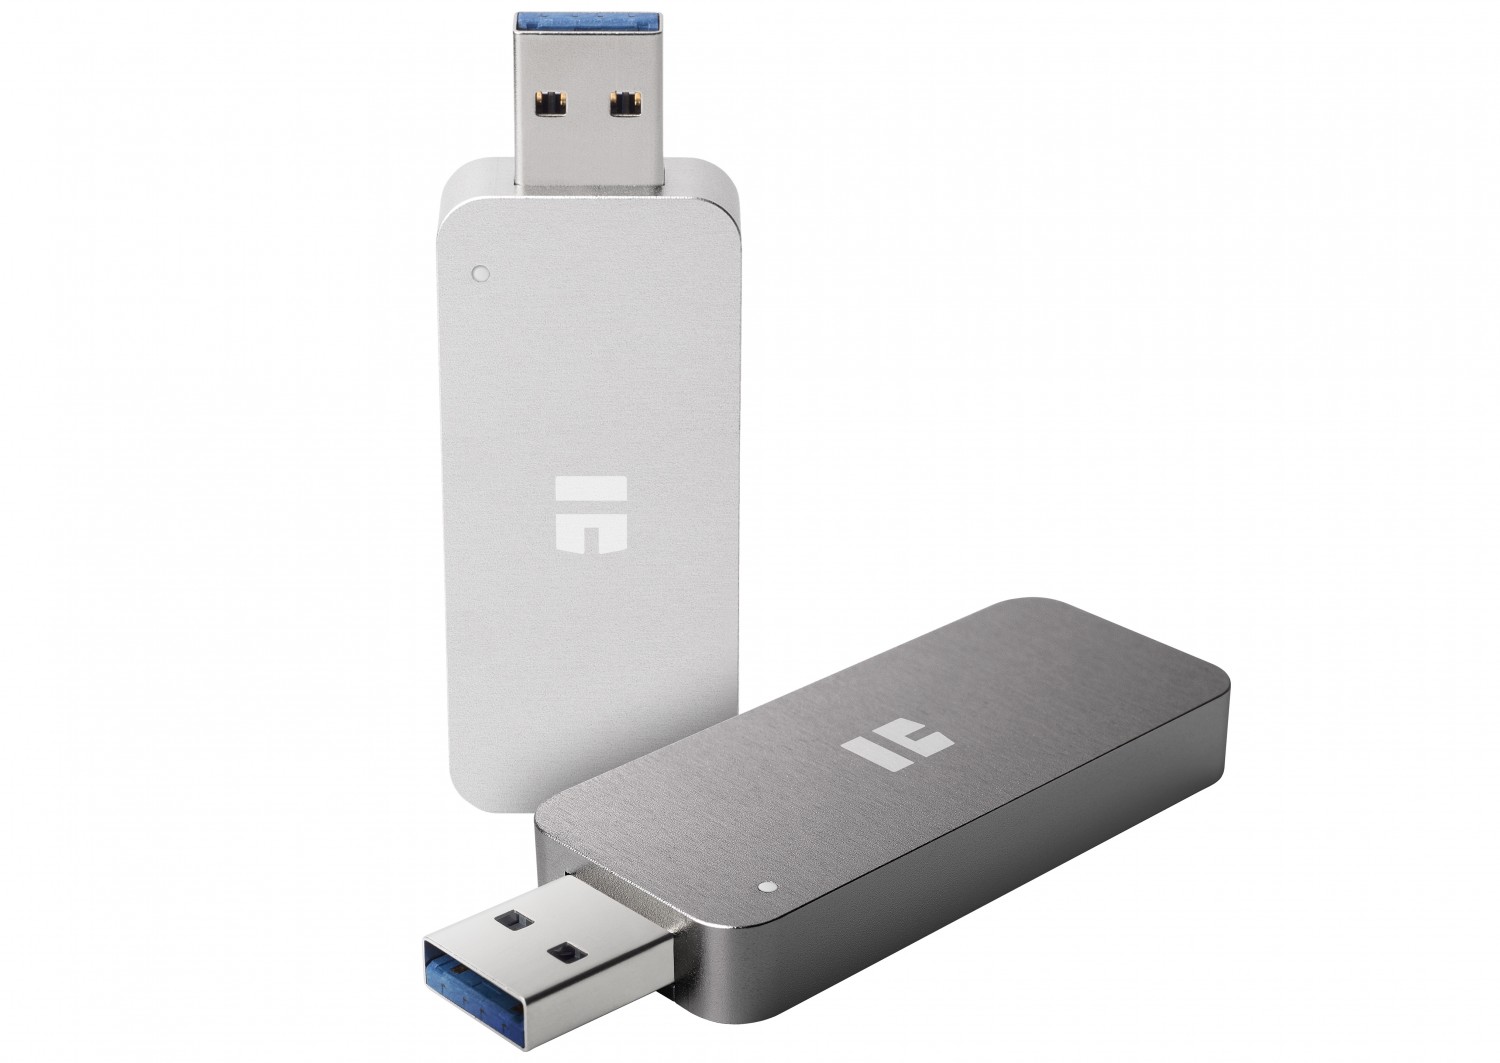 Smart Home Schnell und schlank: Solid State Drive mit bis zu 512 GB im USB-Stick-Format - News, Bild 1